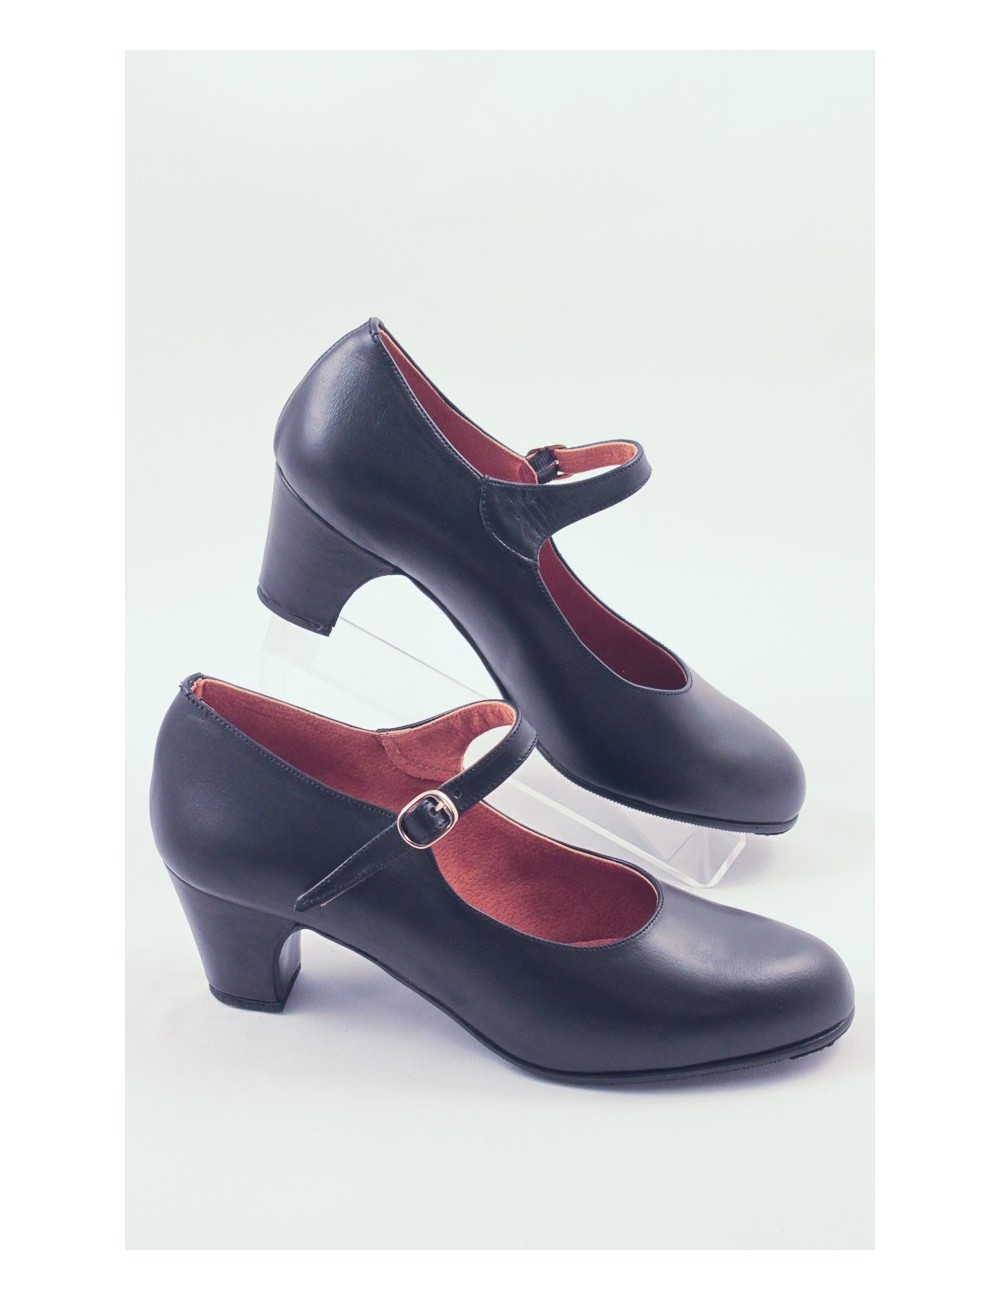 Chaussures Noire Cuir Flamenco